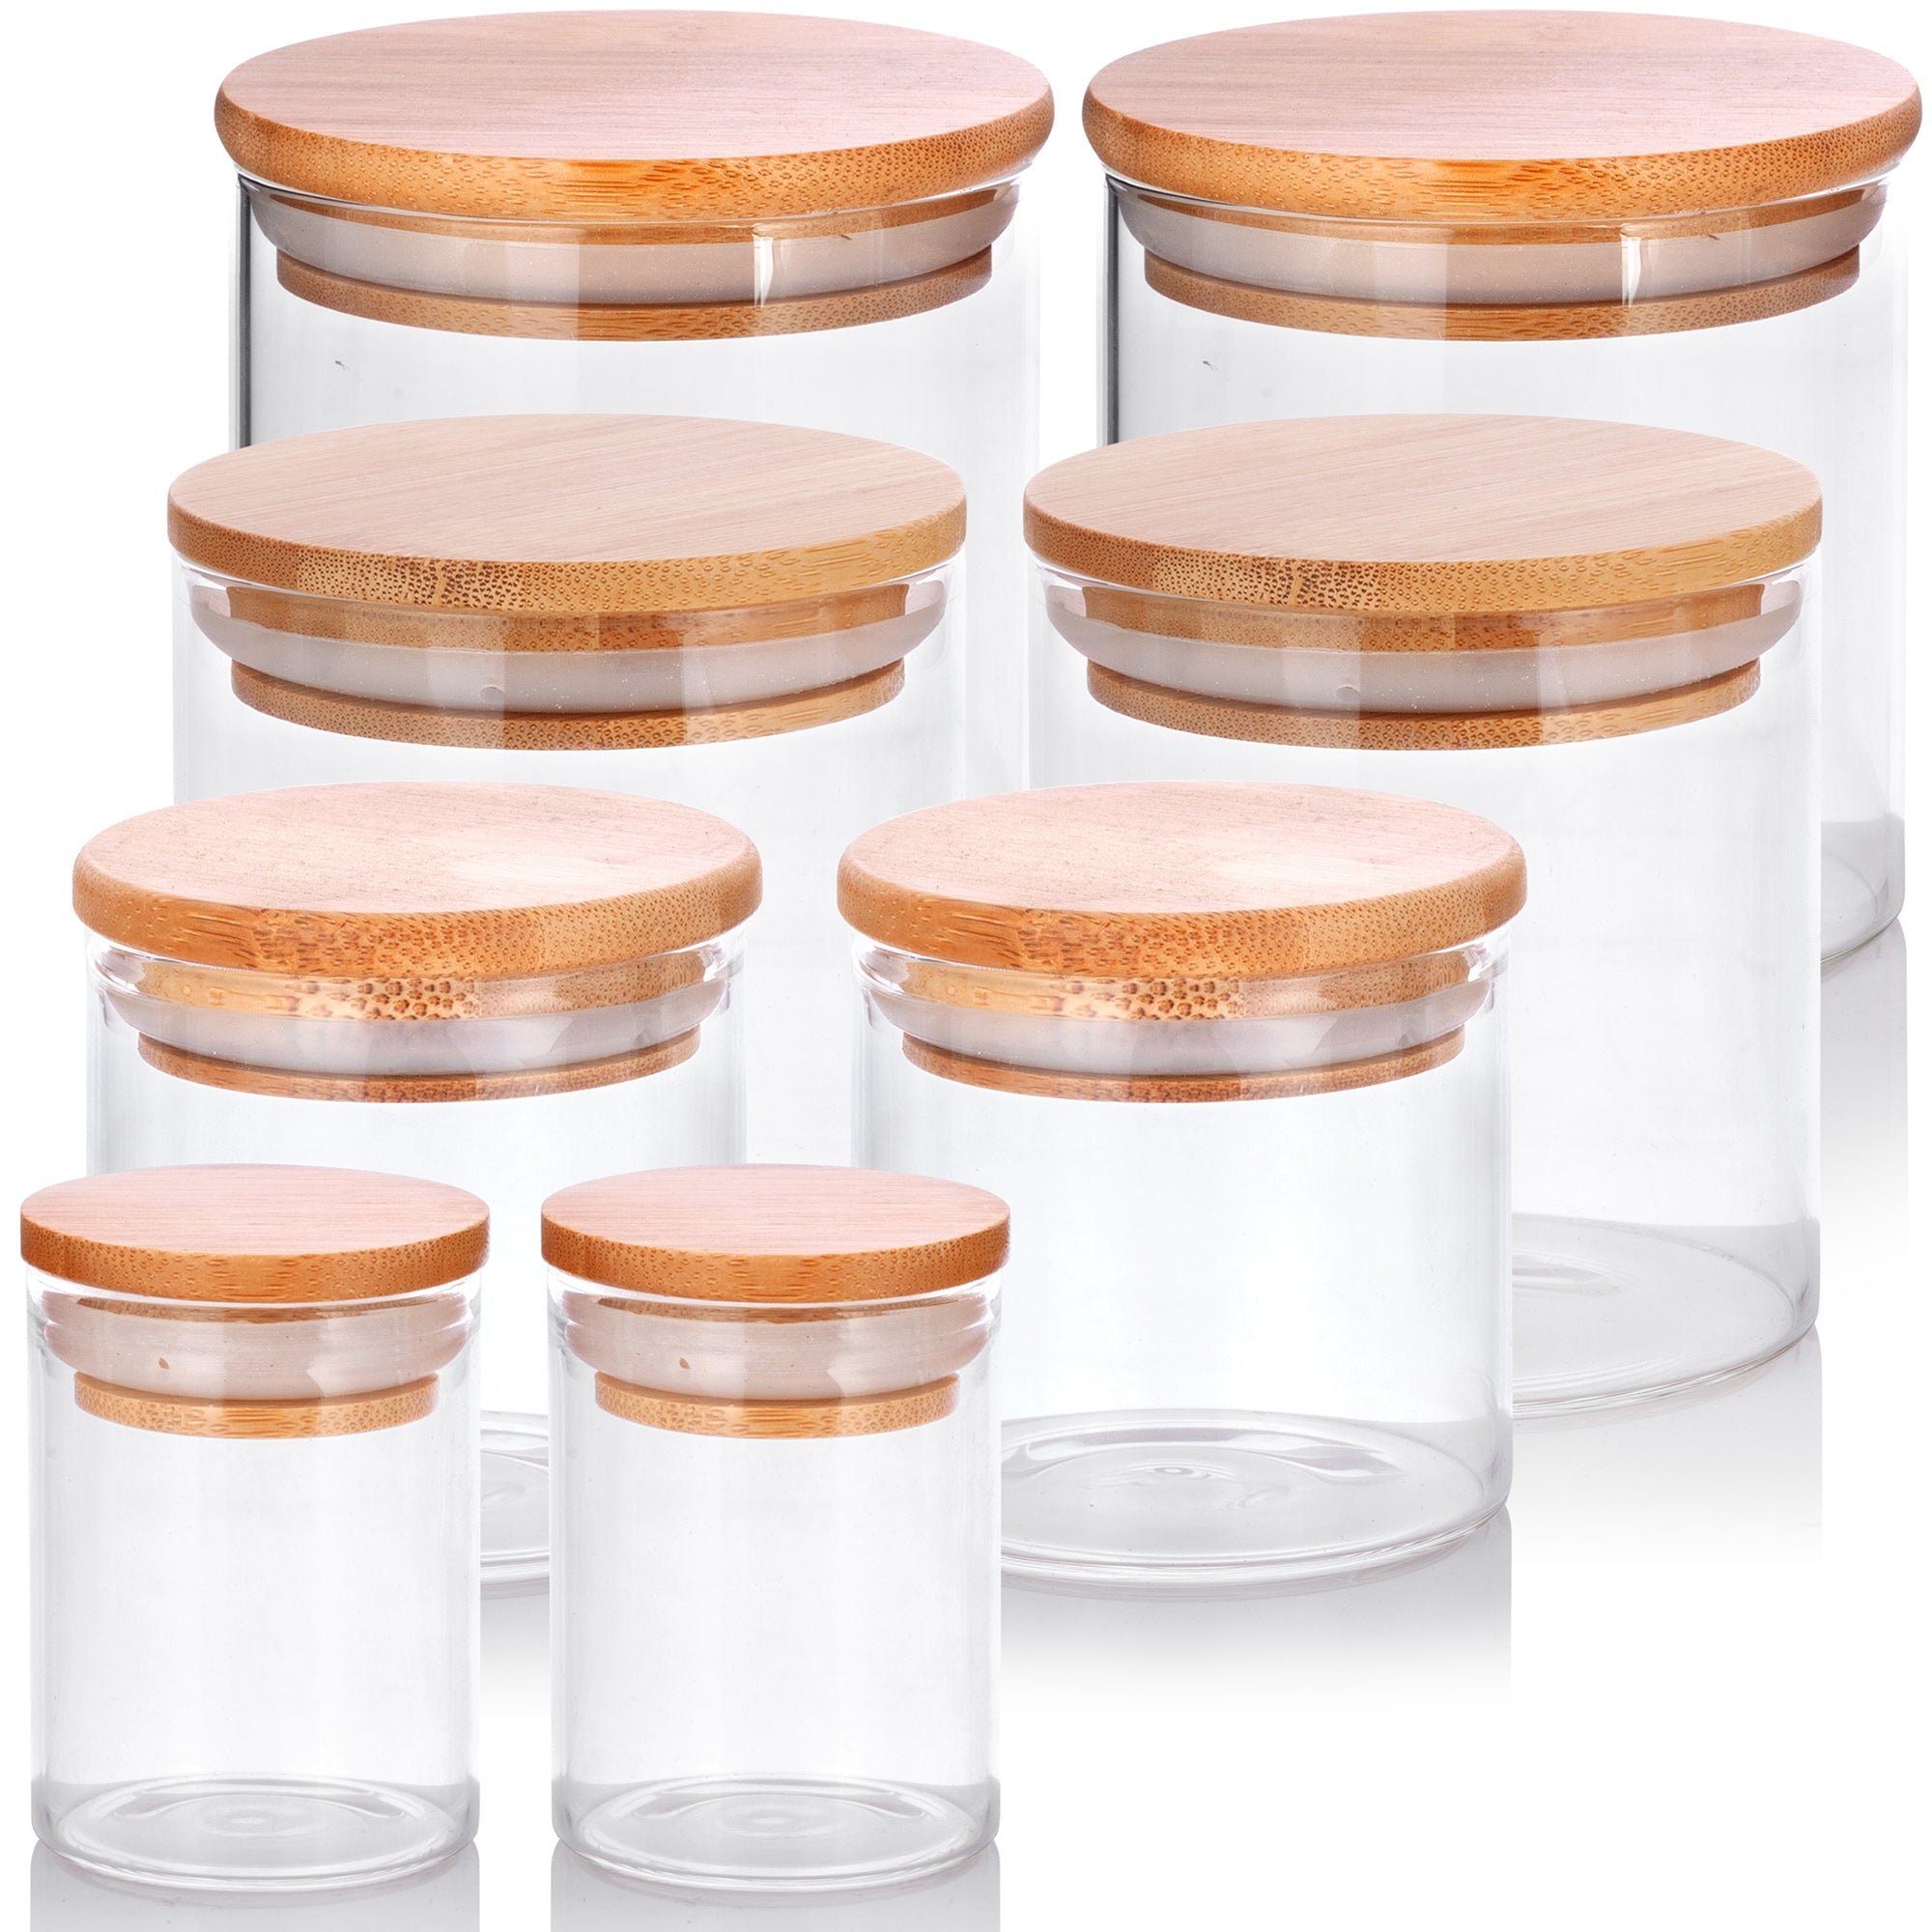 KKC Borosilicate Glass Storage Jars with Wooden Lids,18 FLoz (550